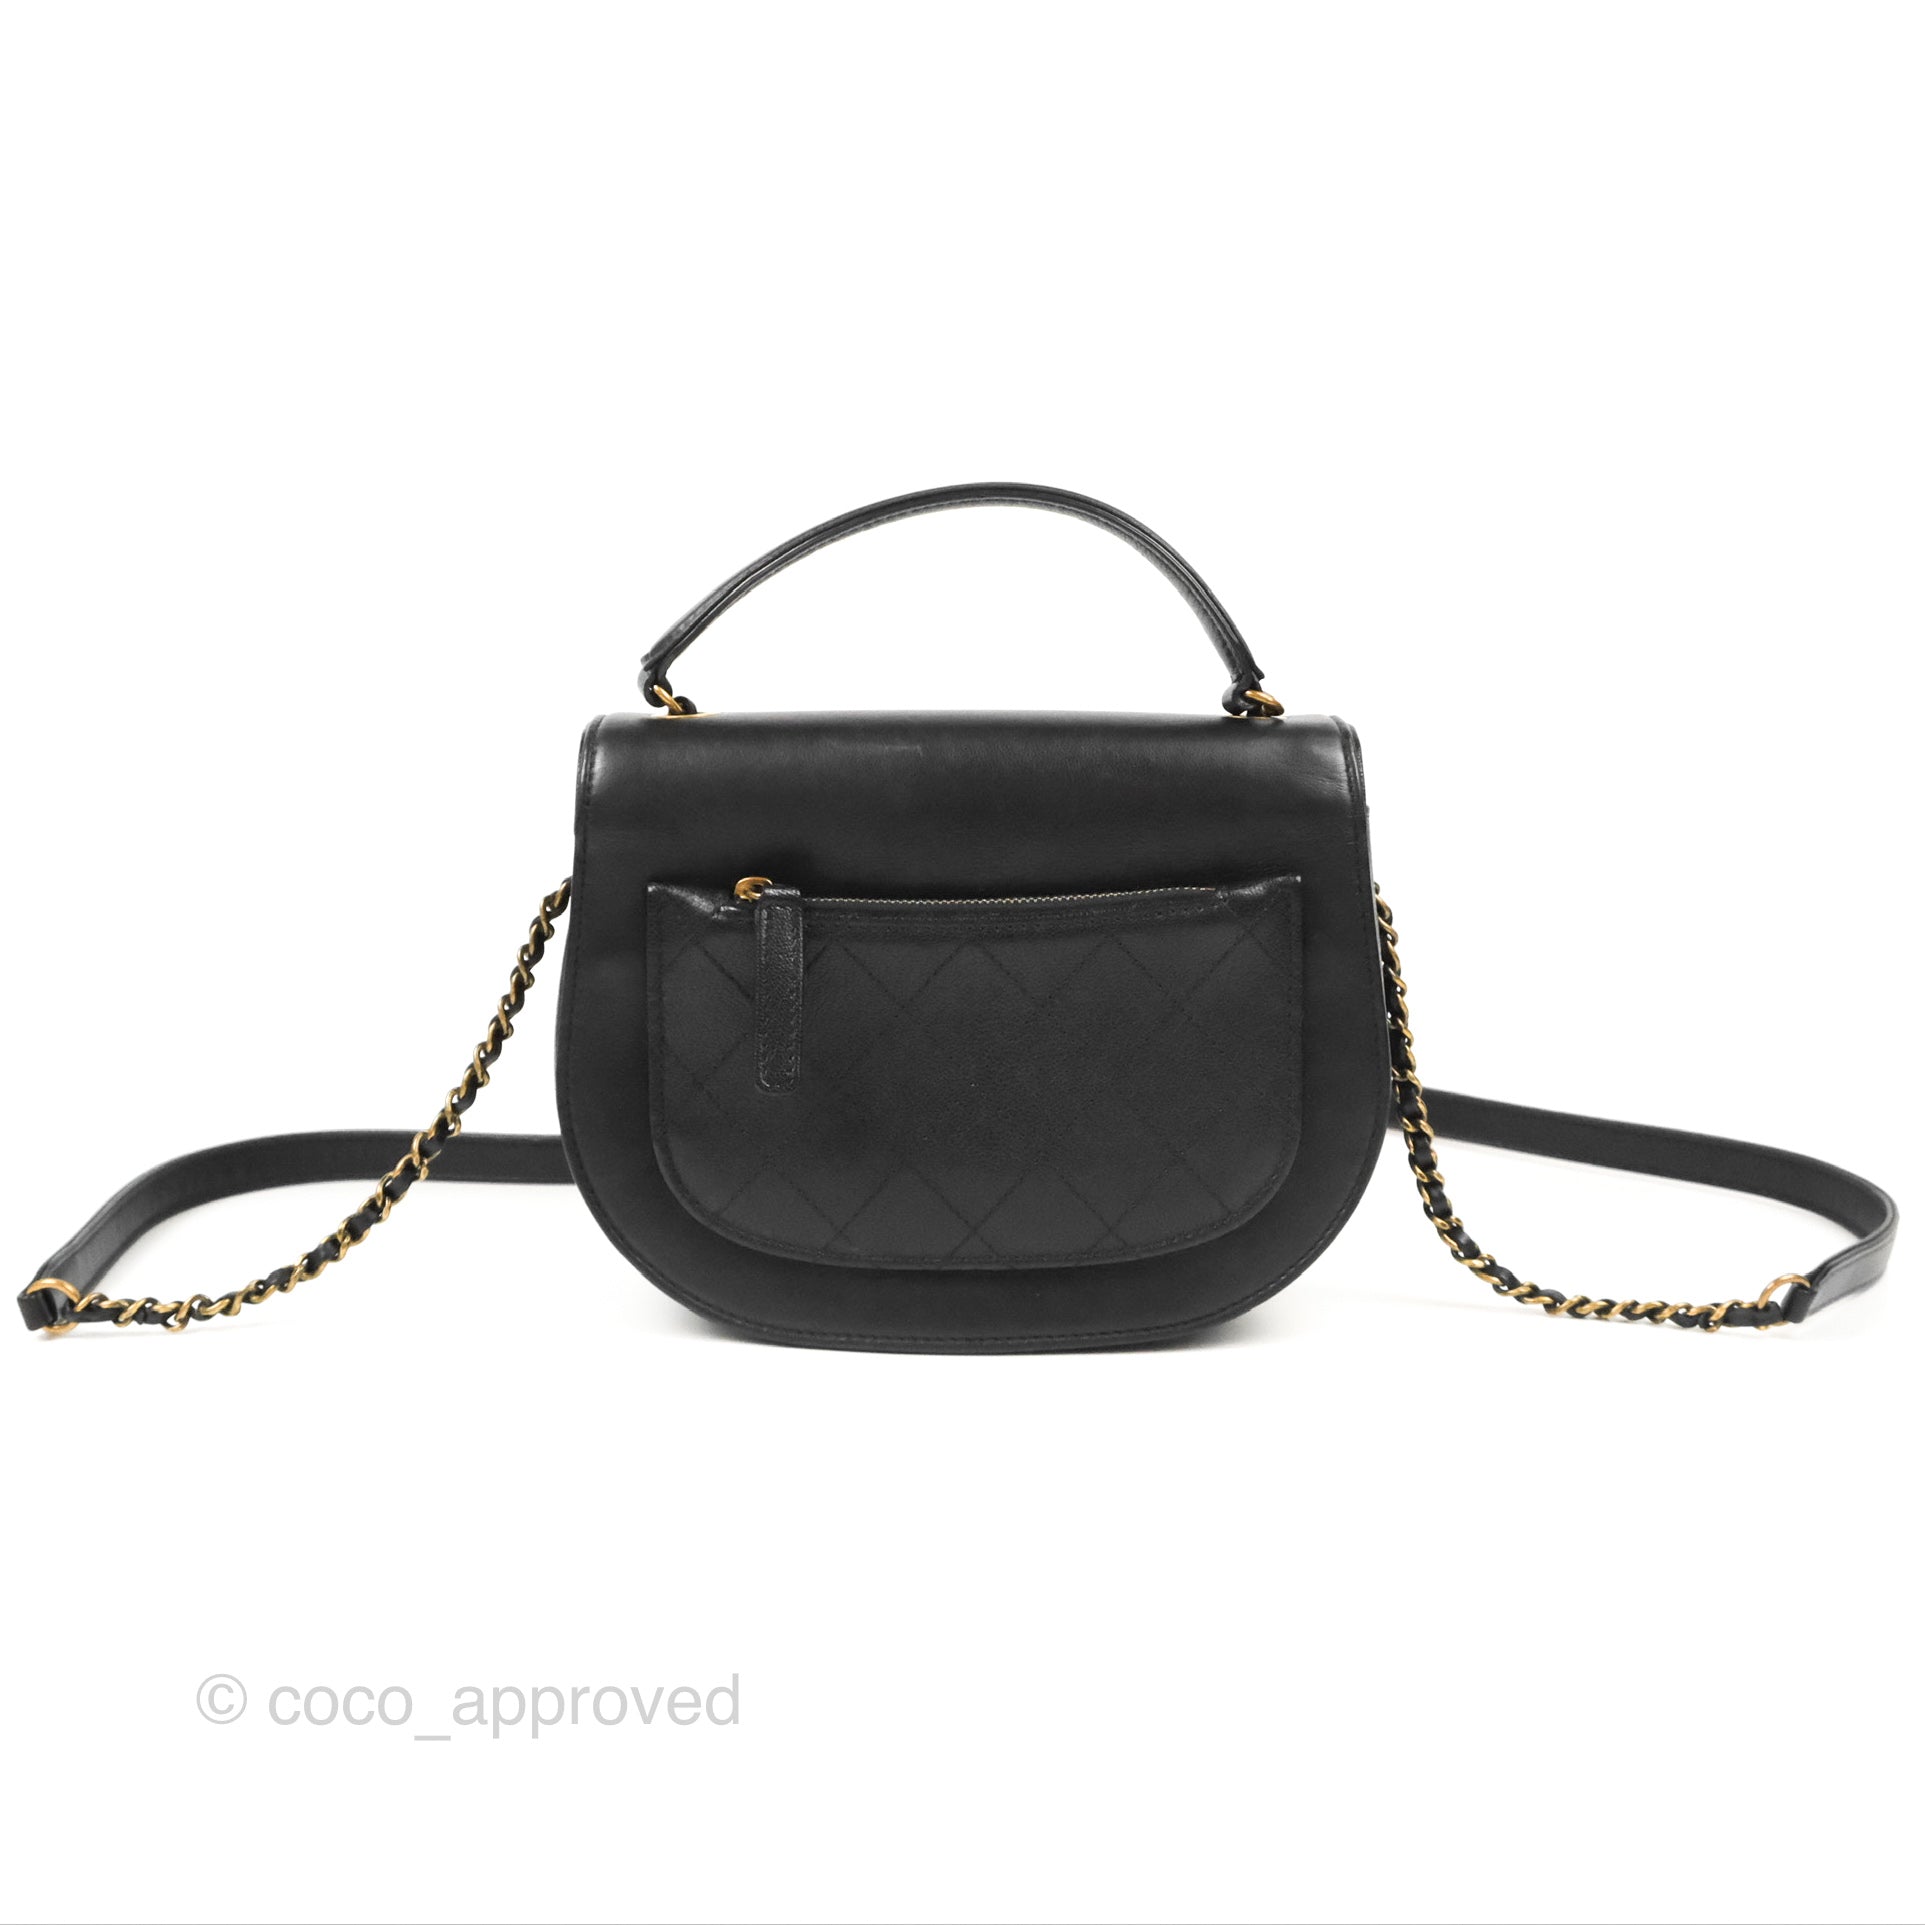 Authentic Chanel Black Leather CoCo Curve Flap Messenger Bag